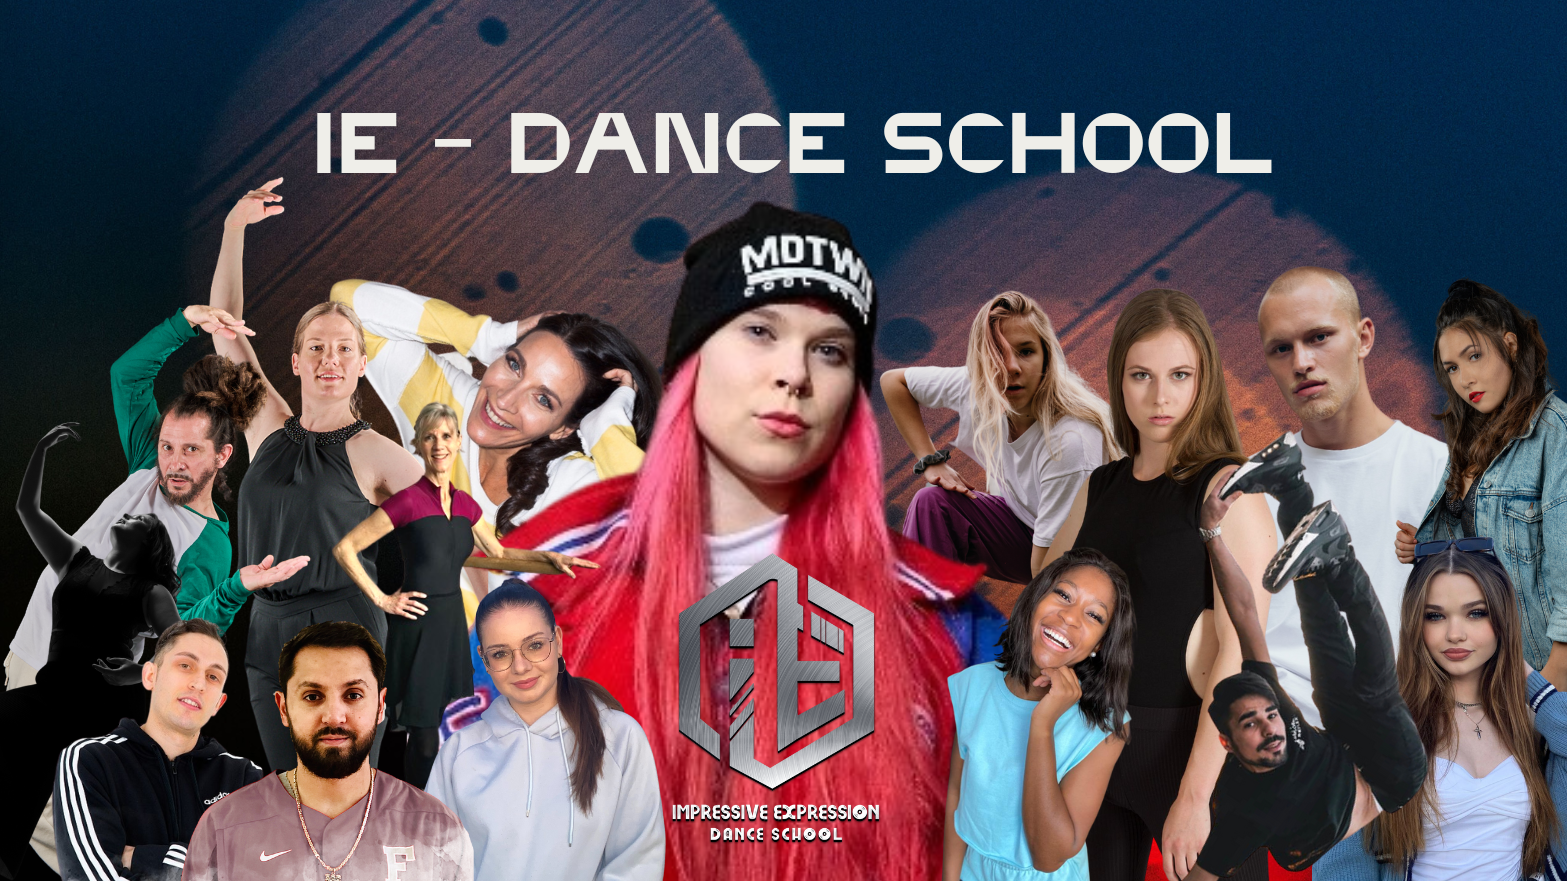 Bilder IE - (Impressive Expression) Dance School